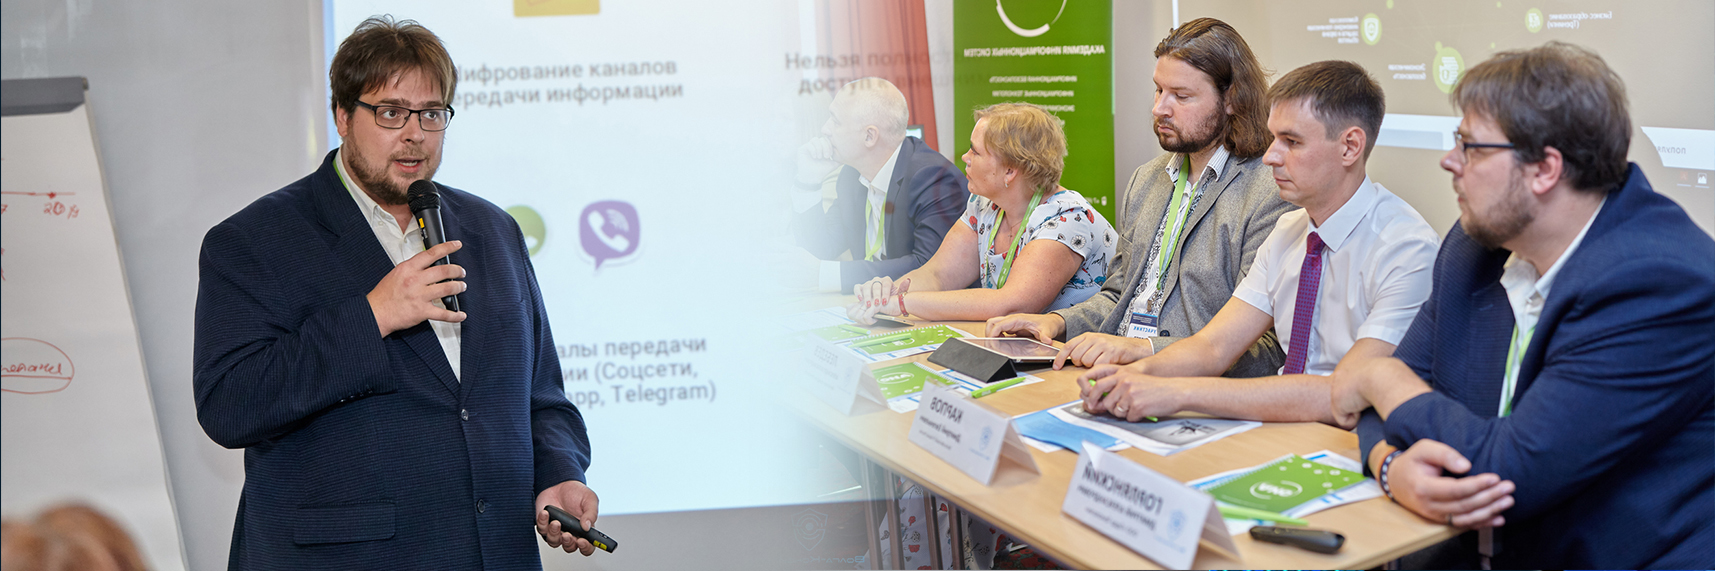 Конференция «Волга-Конфидент»  состоялась в Нижнем Новгороде